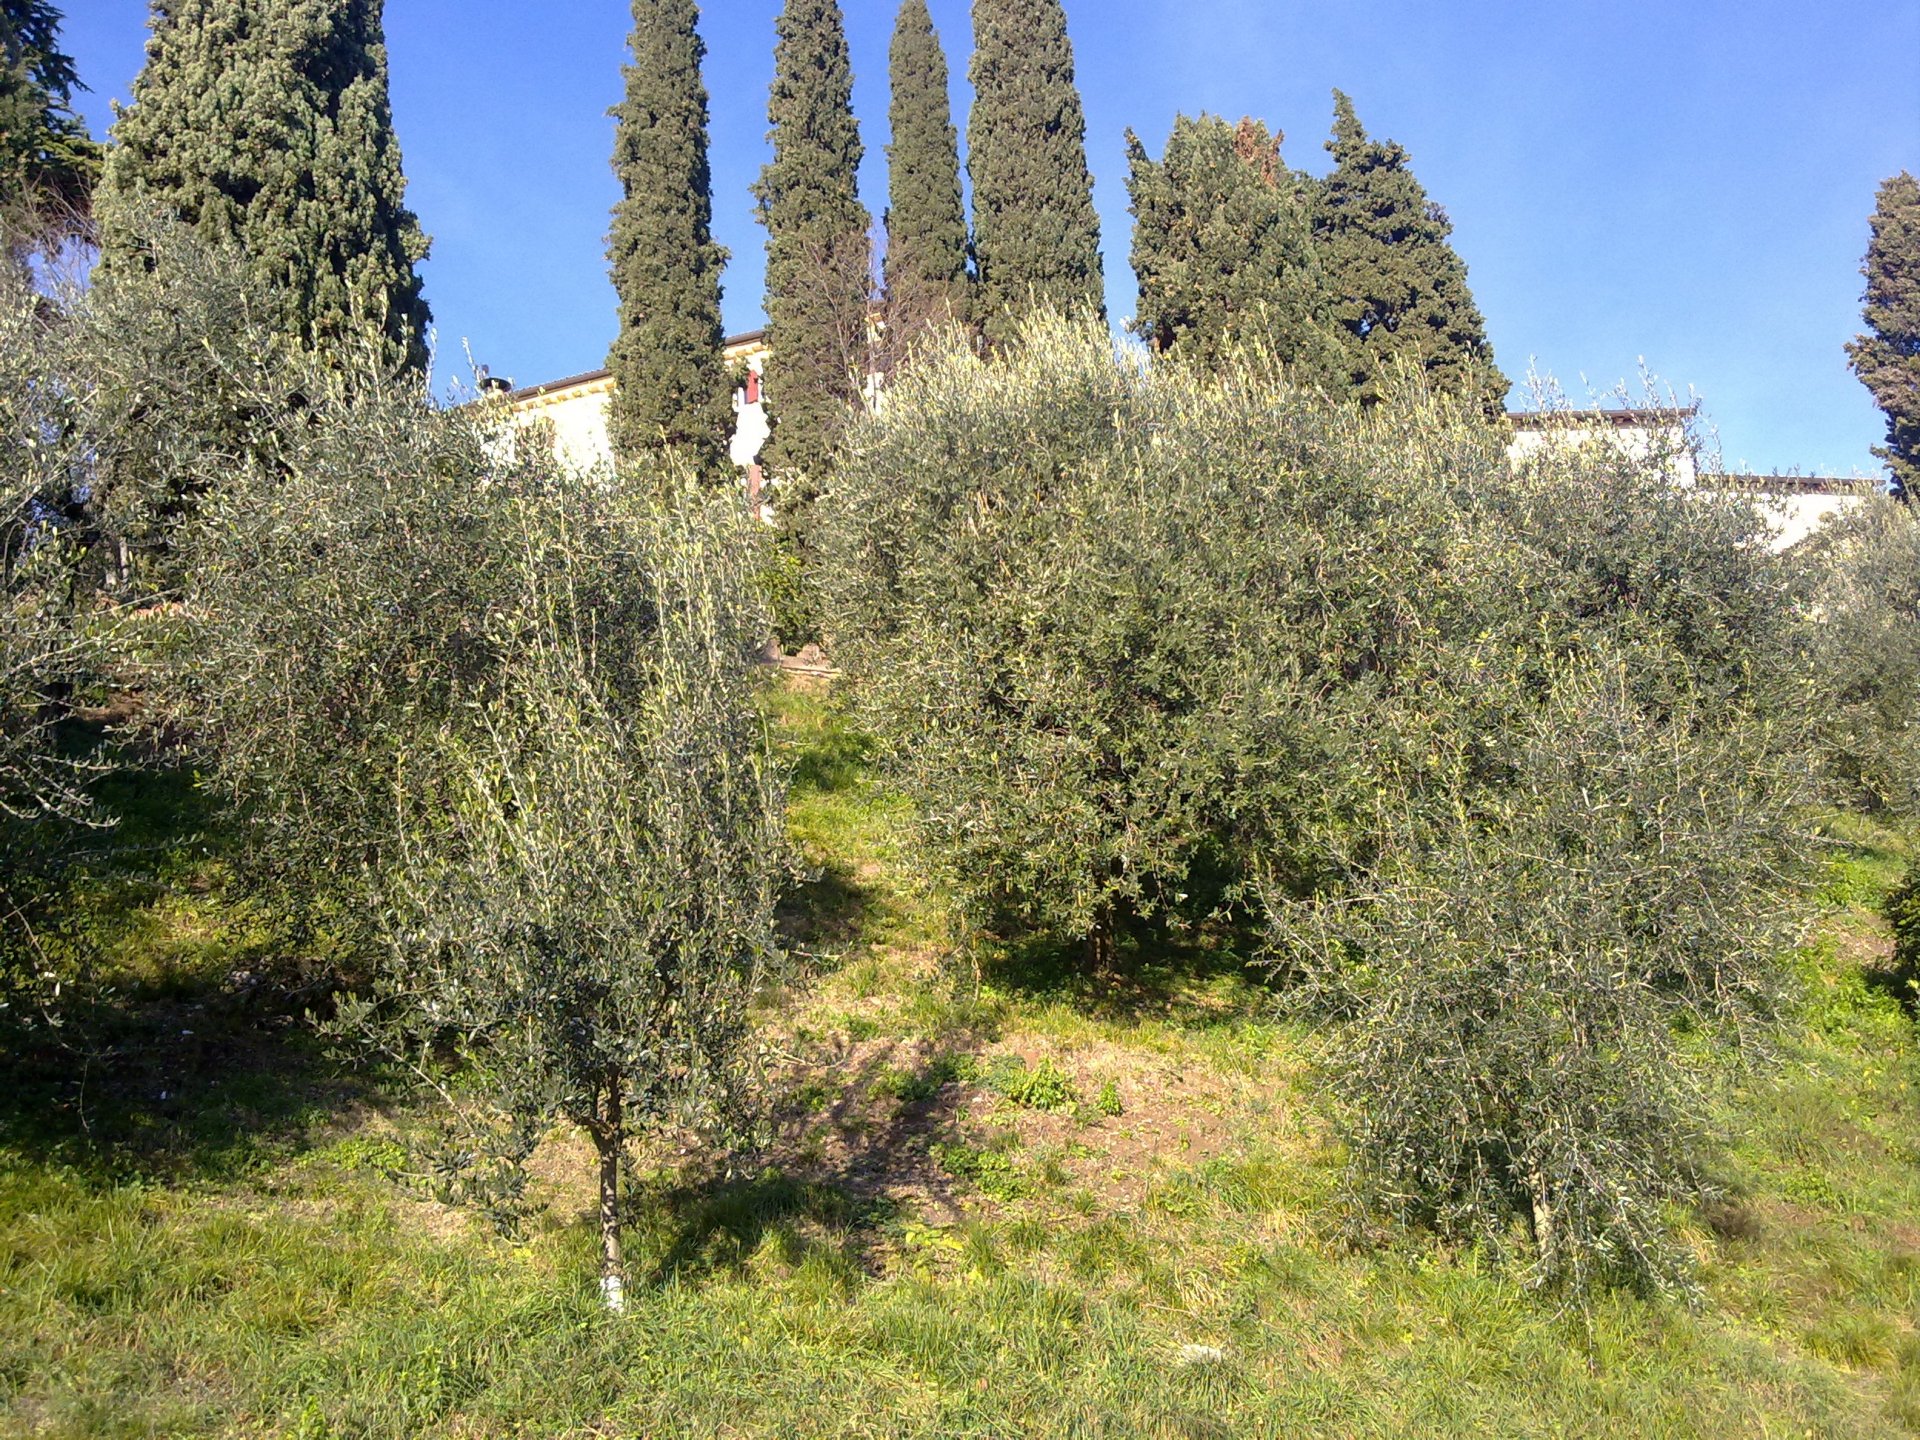 Ad Asolo, incontro sulla cascola verde delle olive